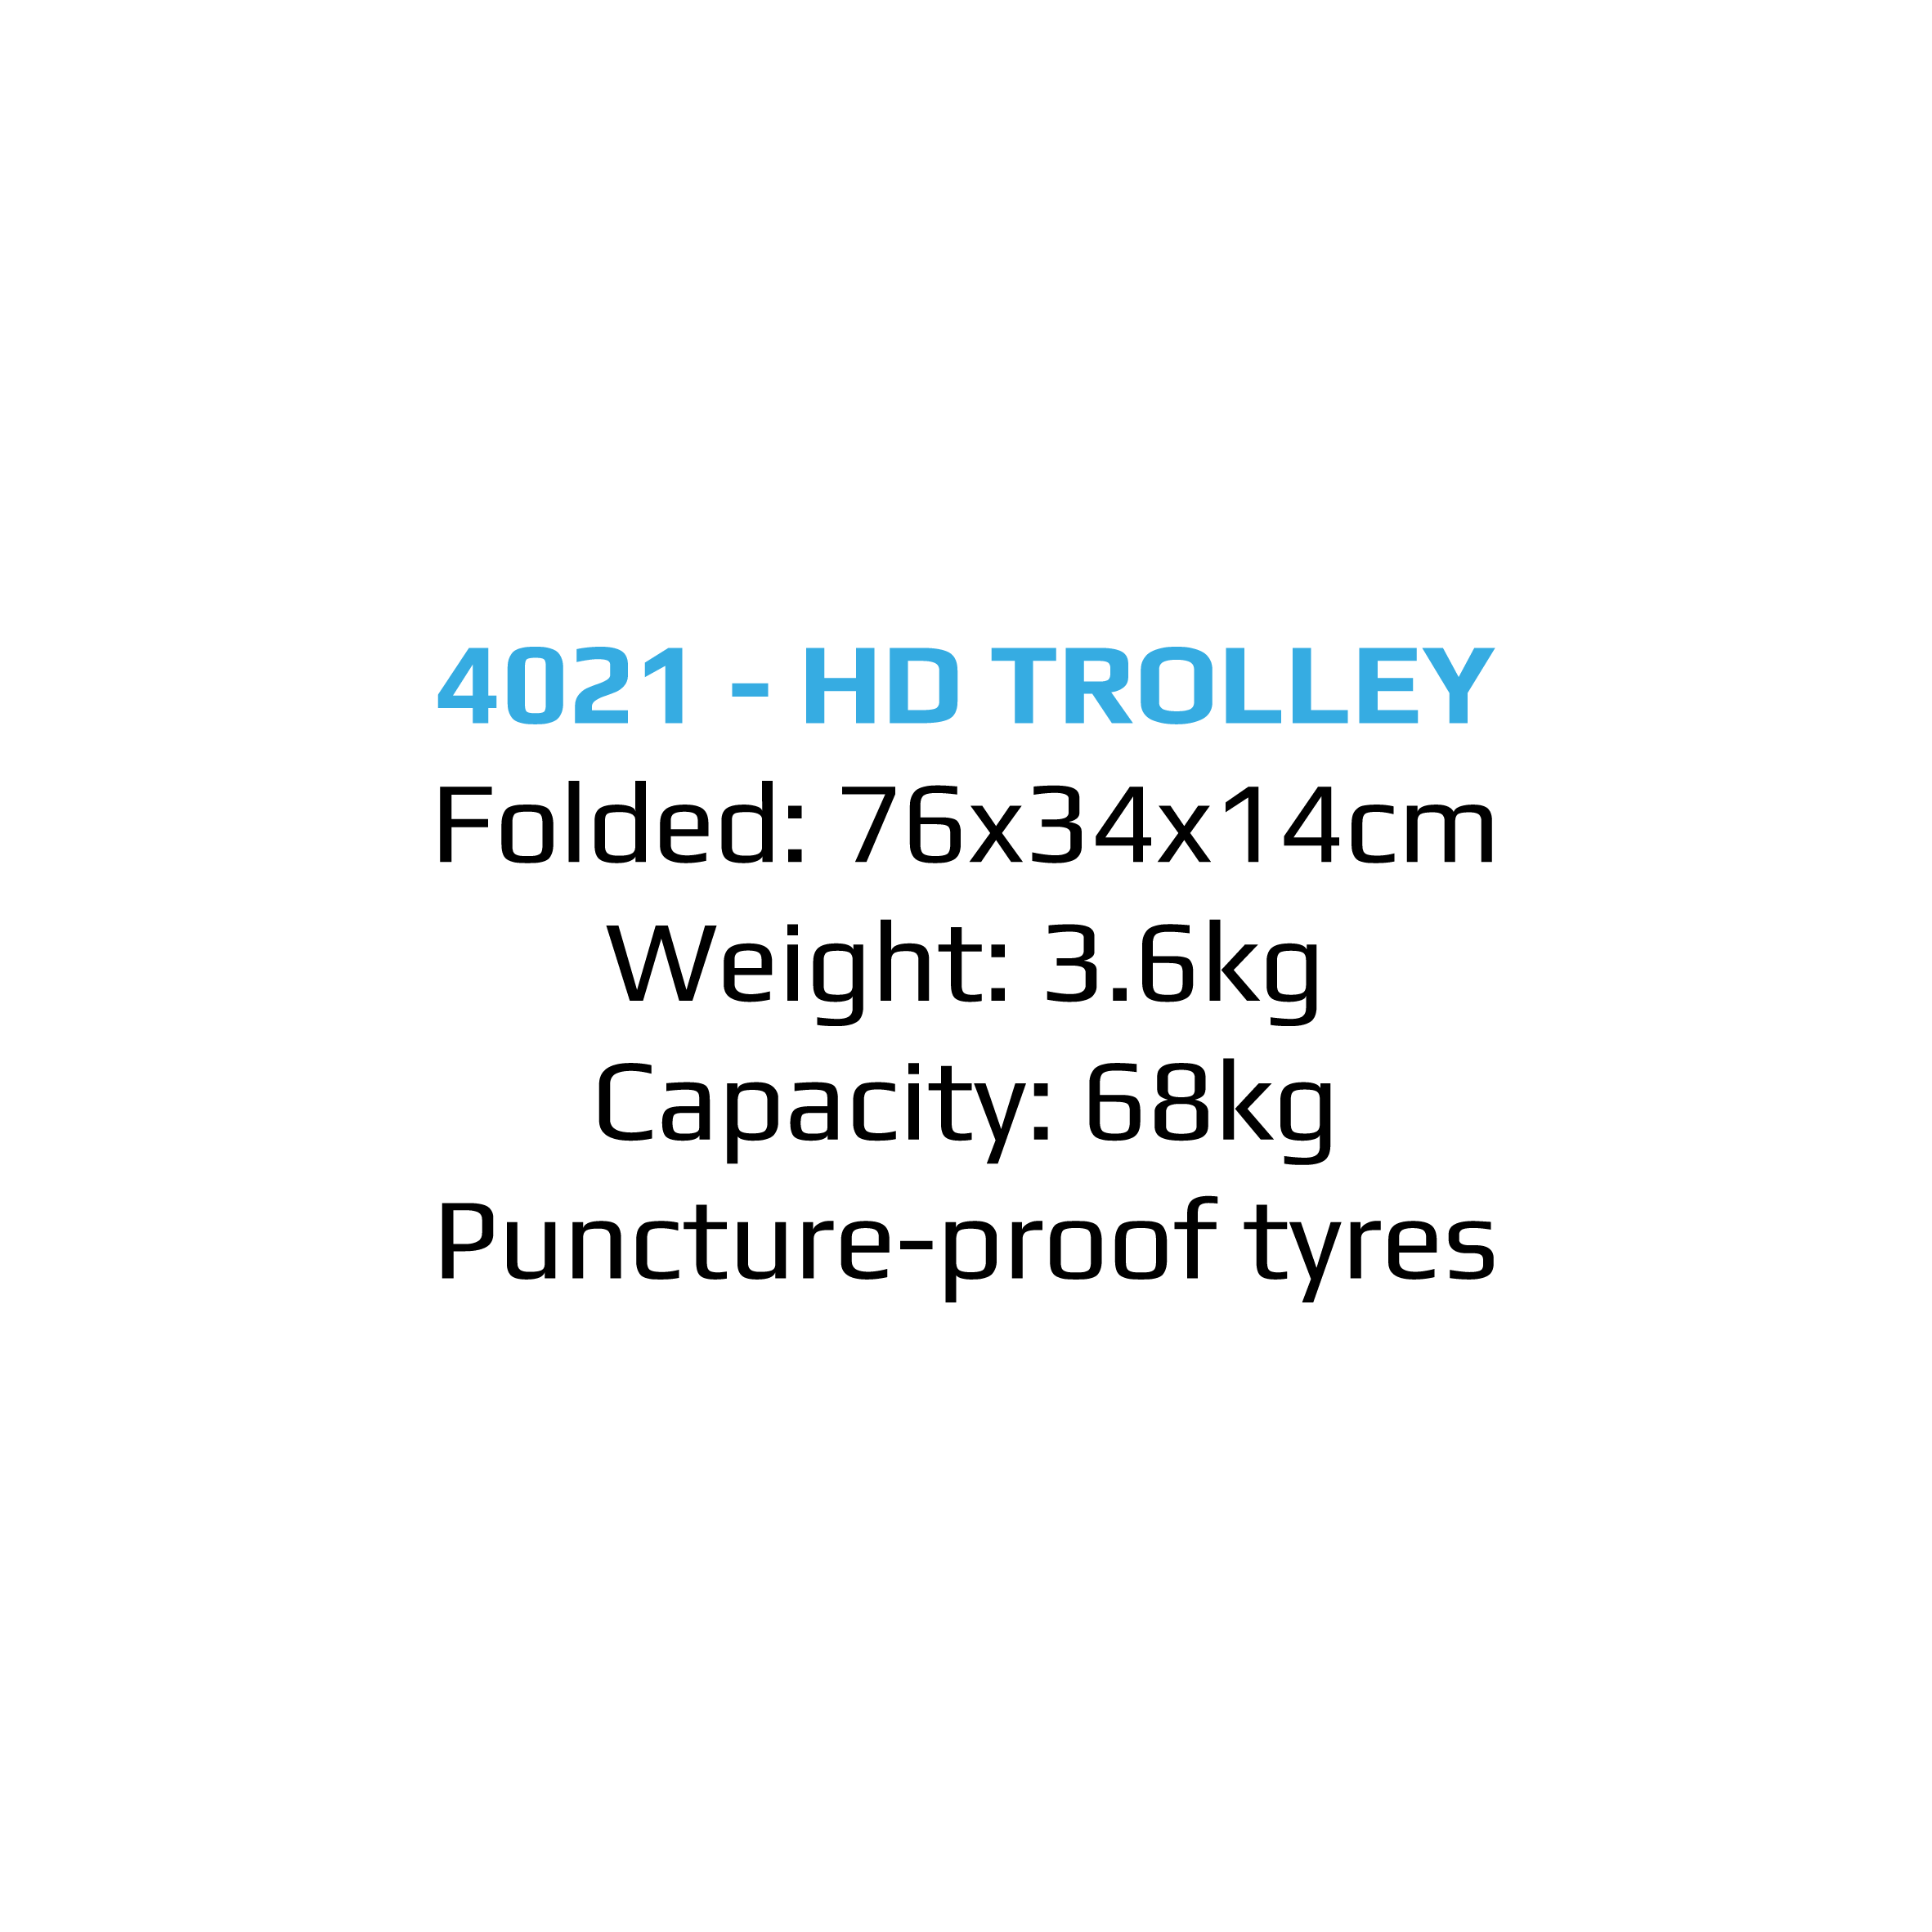 4021 HD TROLLEY SEPEC